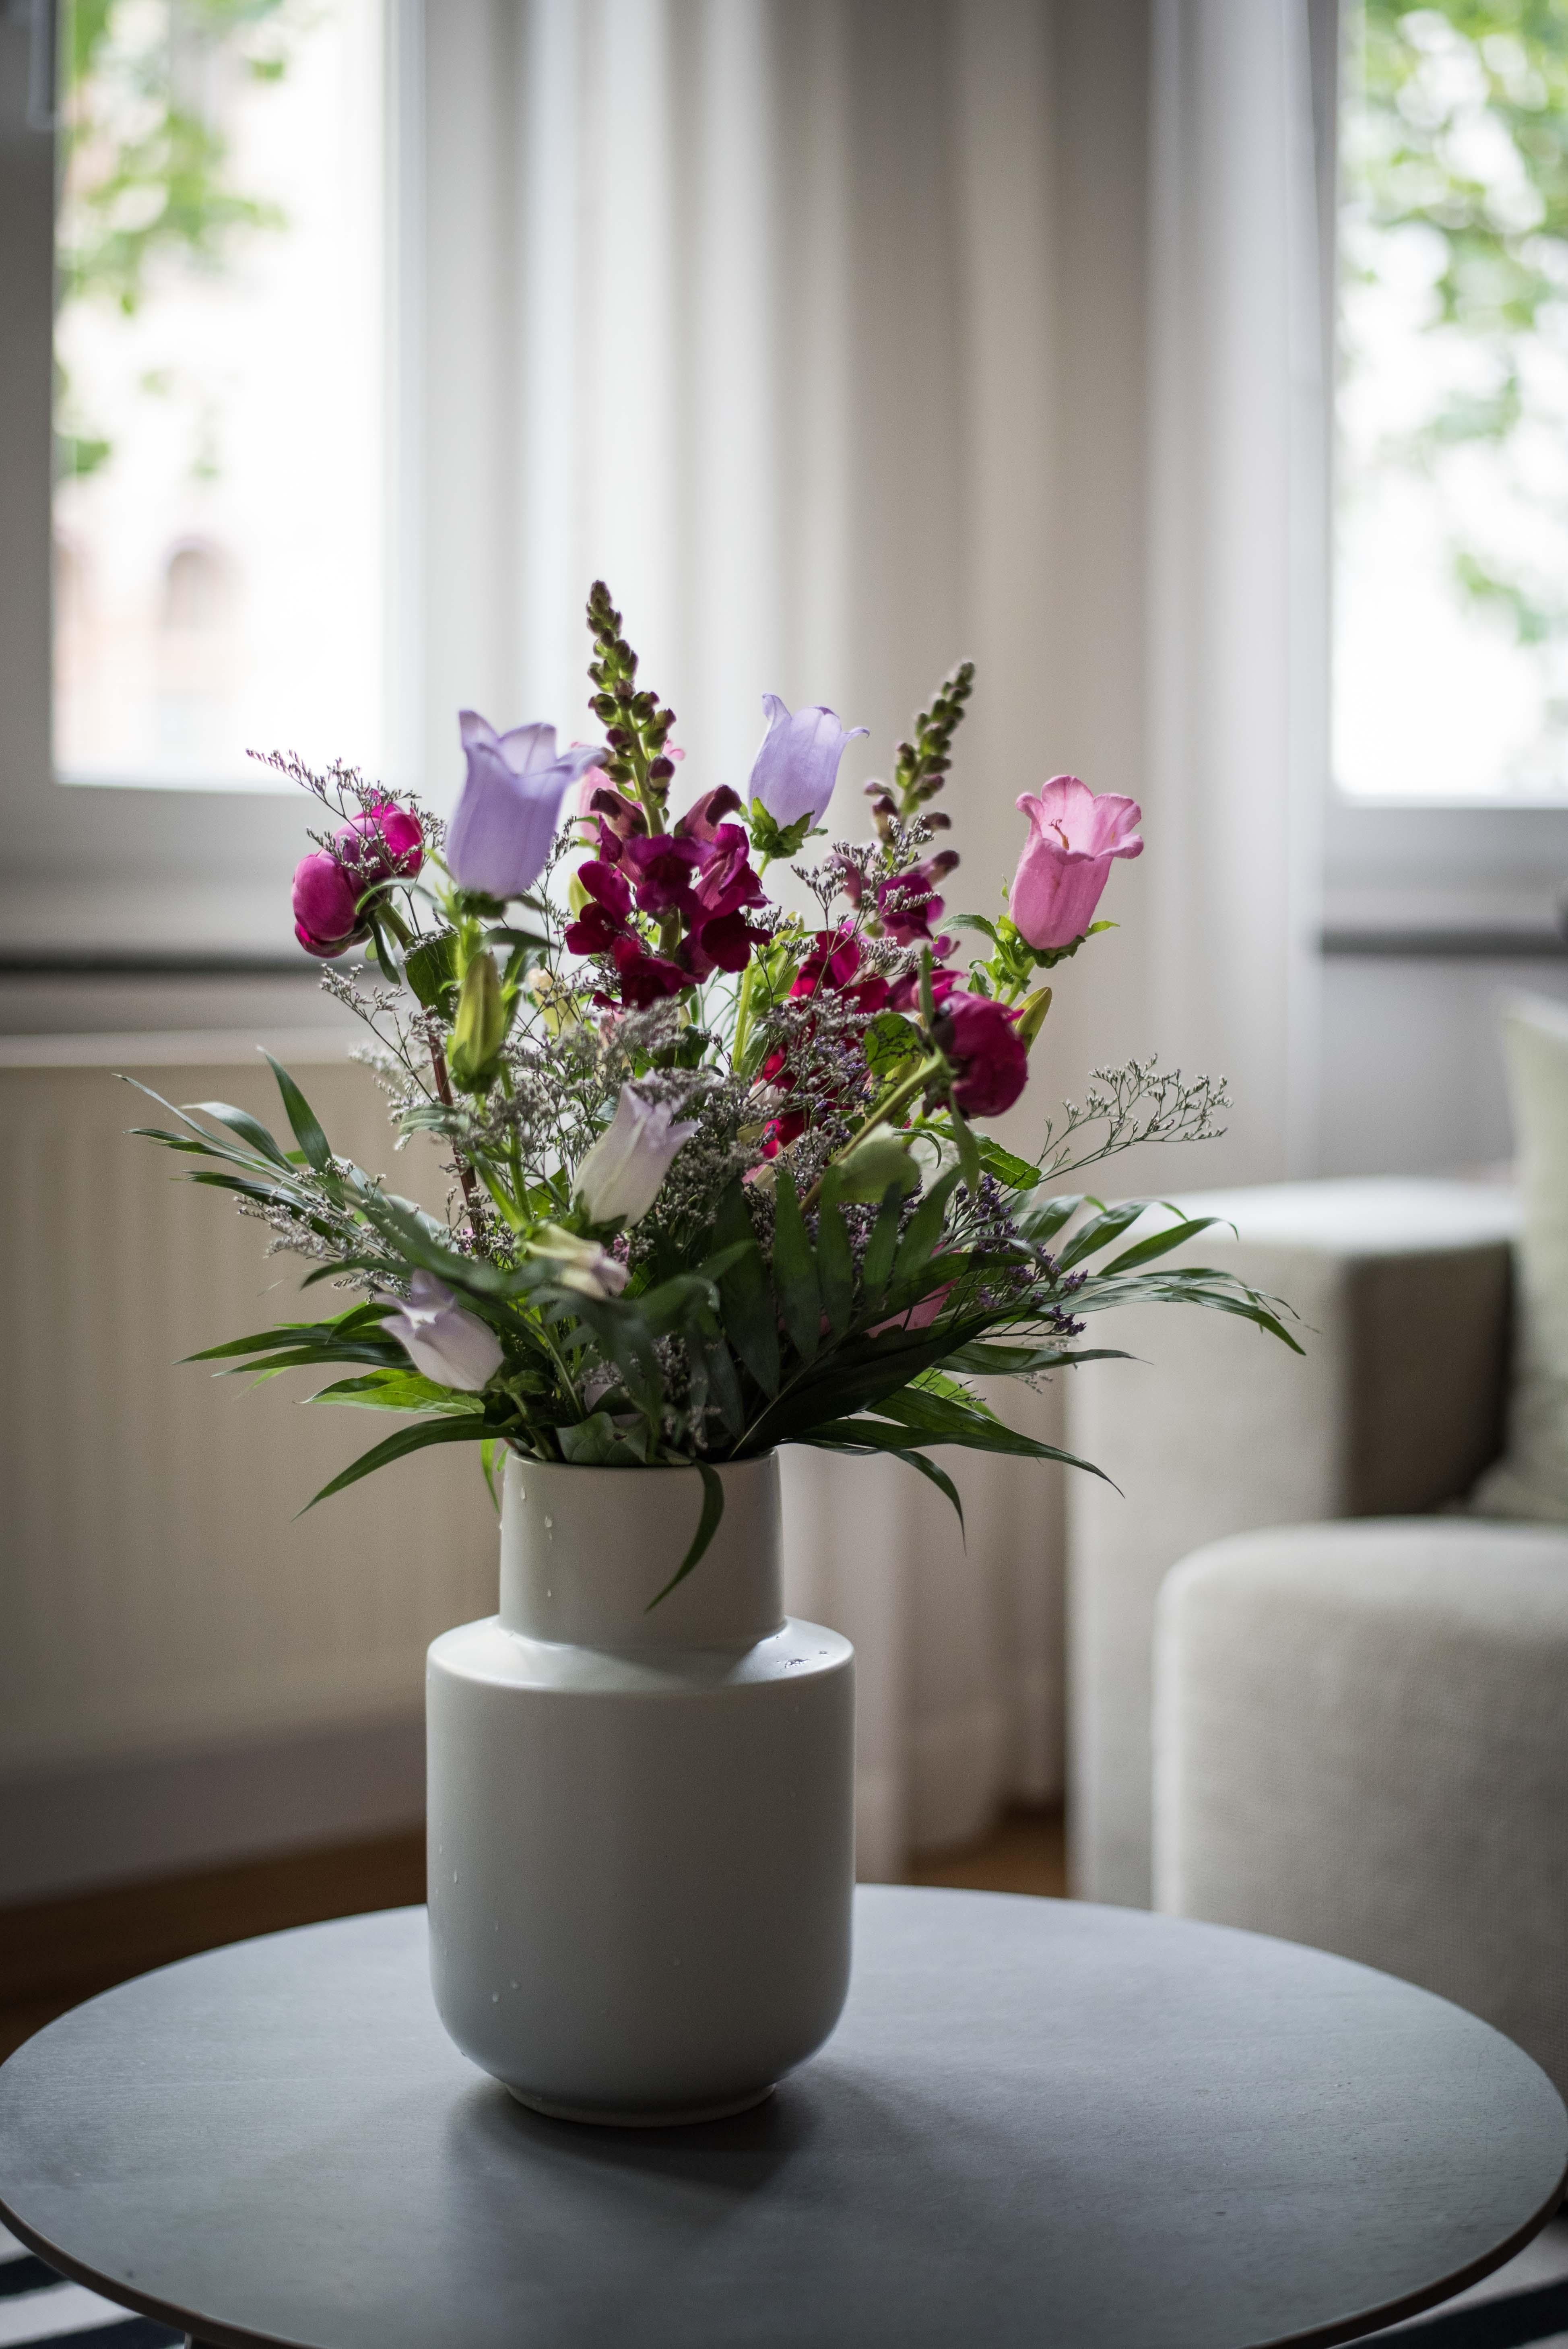 Freitags Blumen
#freshflowers #interior #interiorstyle
